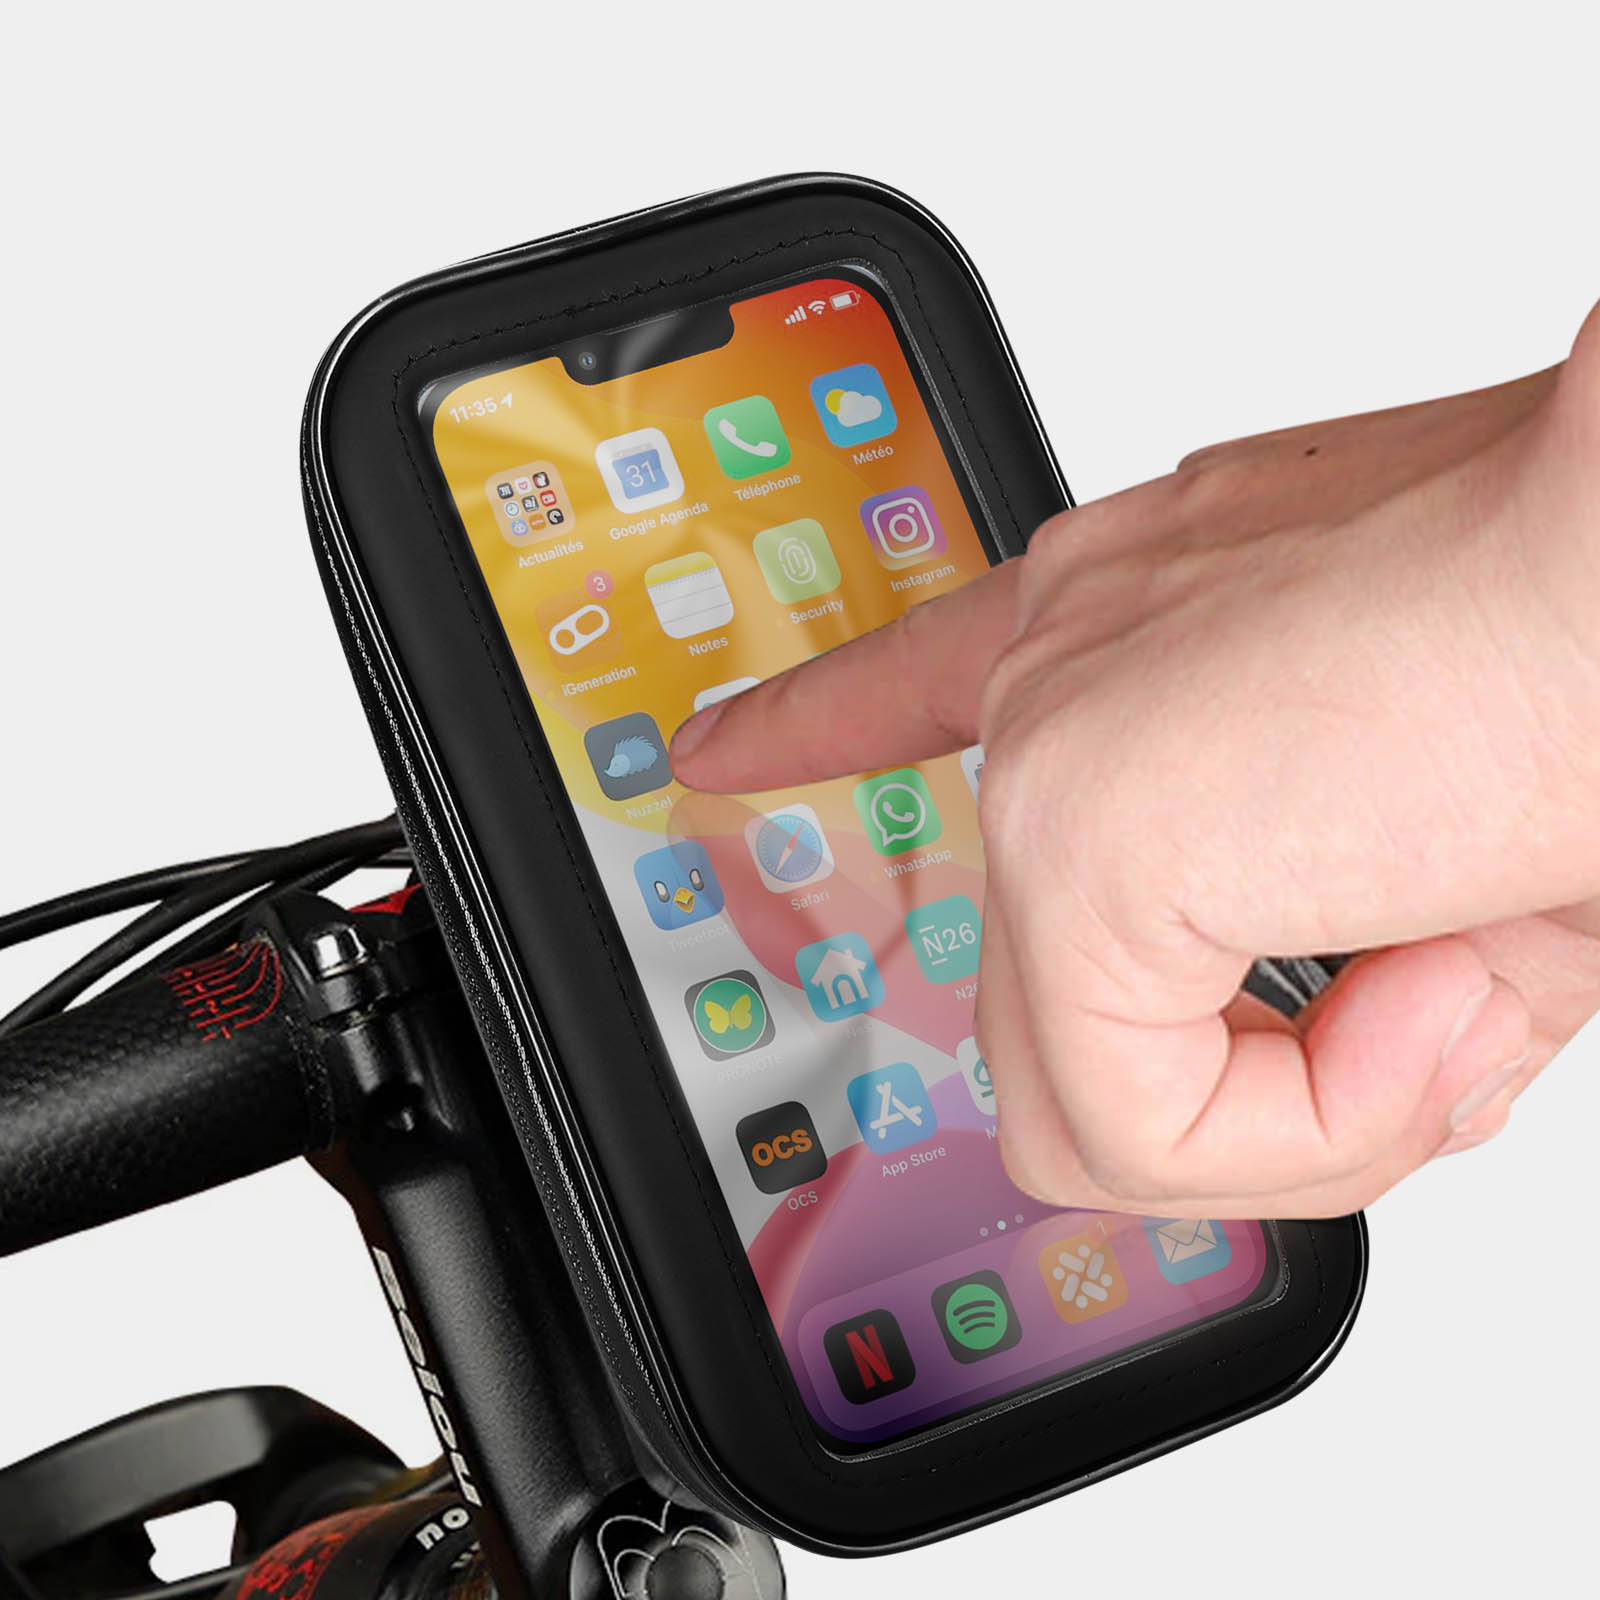 Baseus Support Vélo / Moto / Trottinette Fixation guidon Rotatif 360° Noir  - Accessoires divers smartphone - LDLC